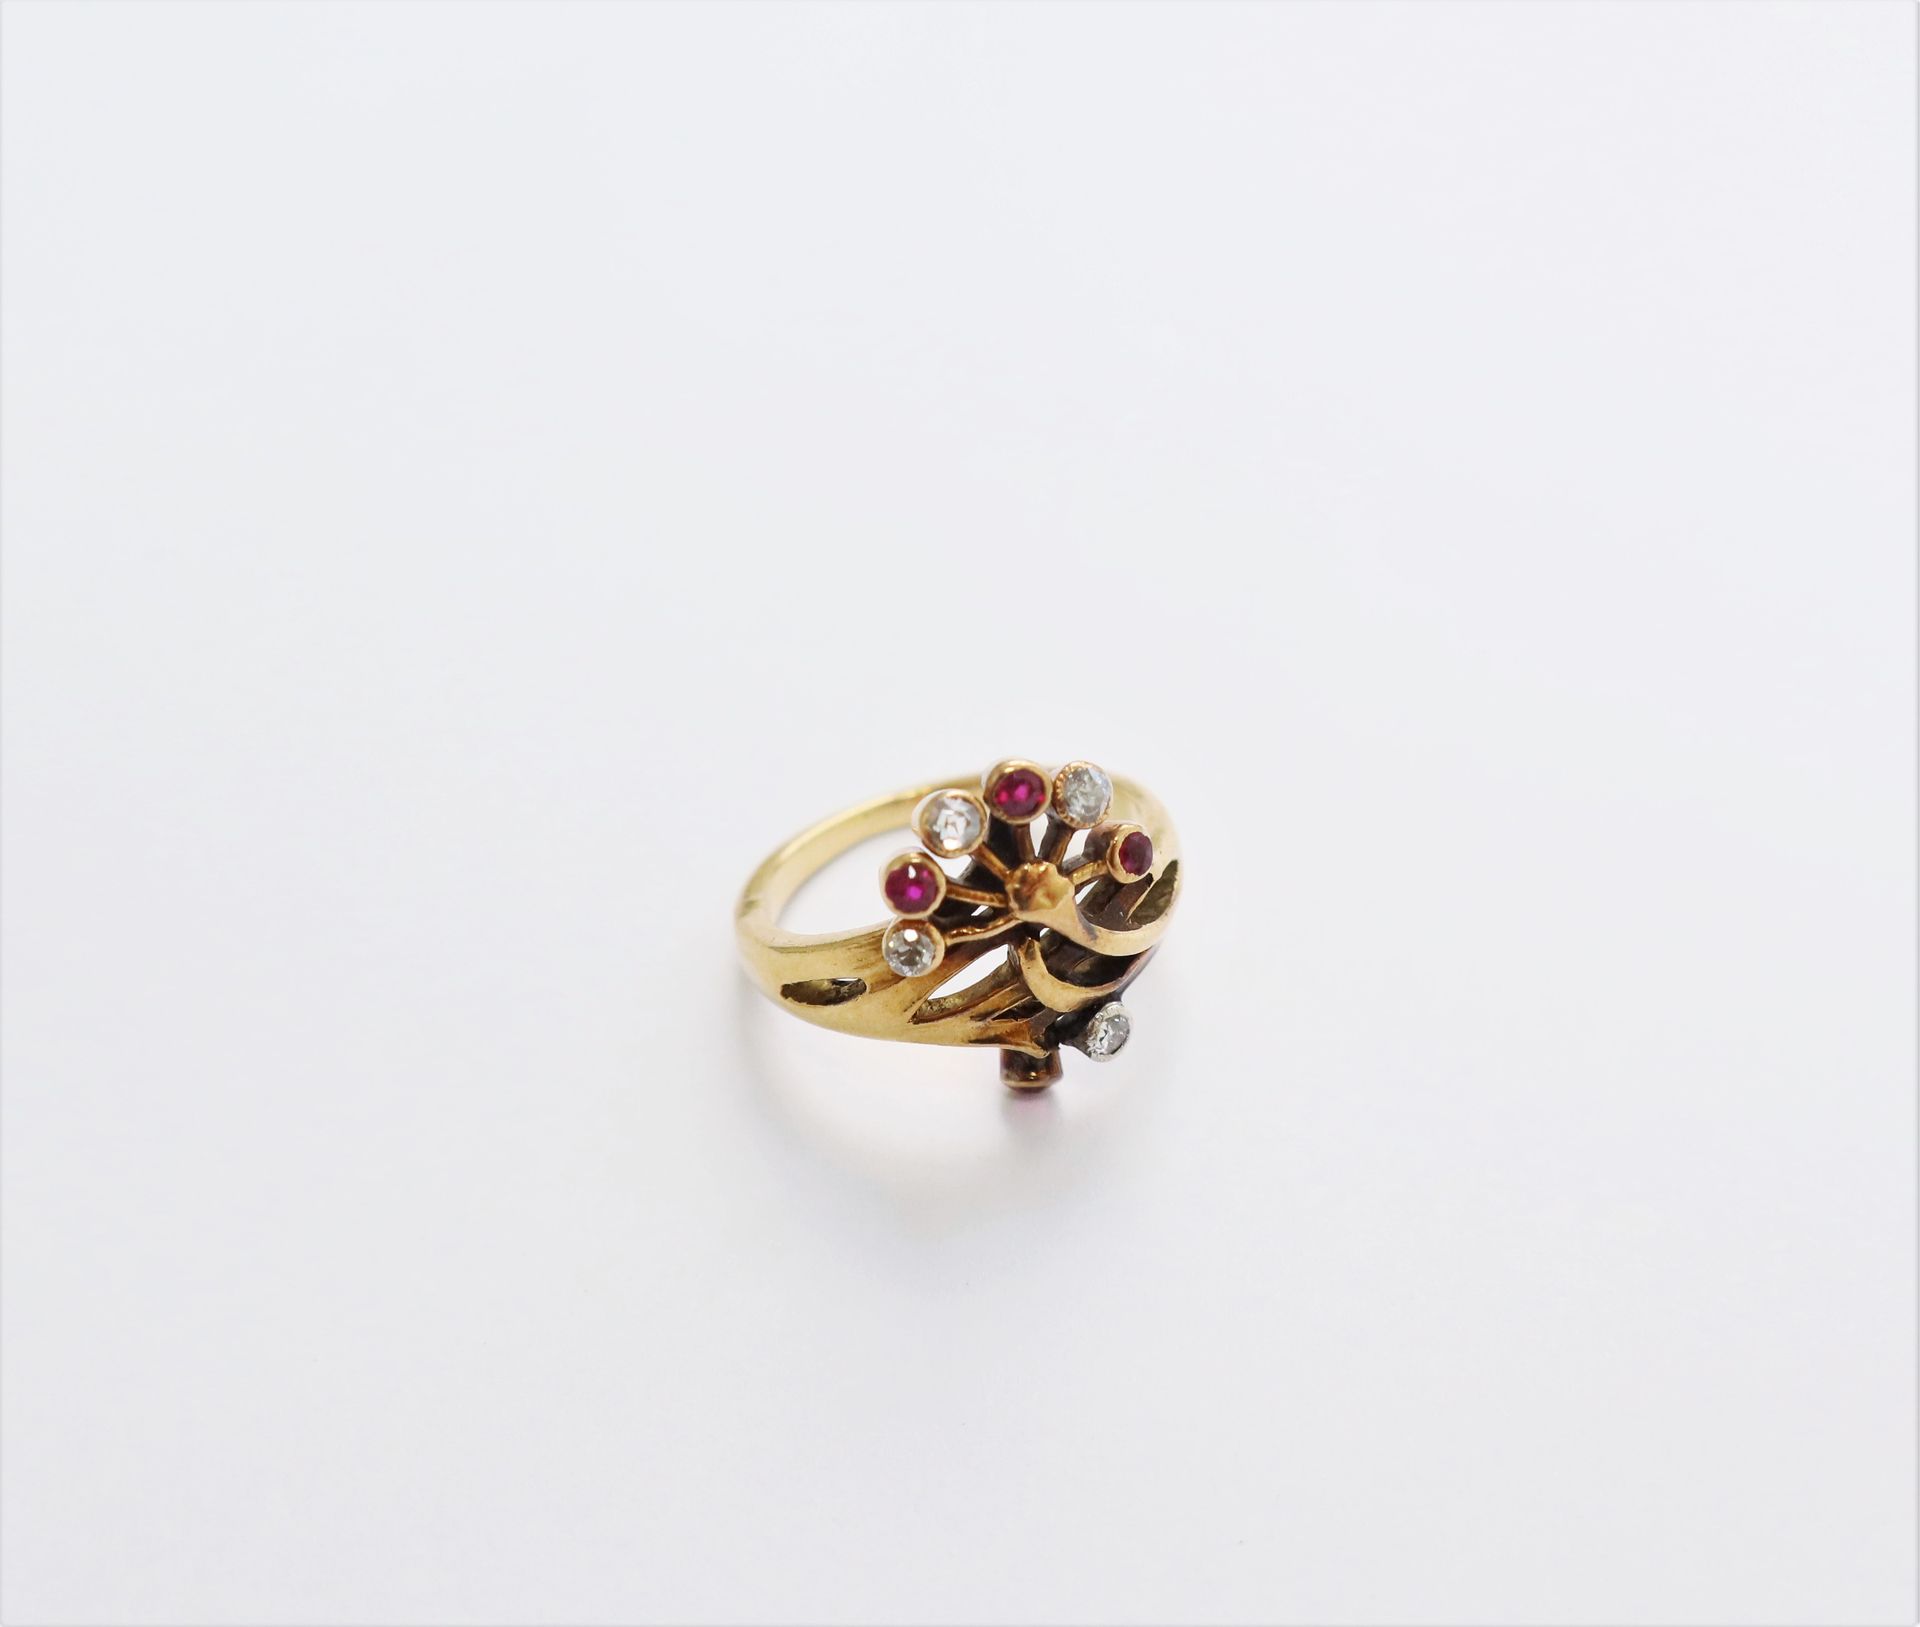 Null 一枚18K(750)金戒指，带有风格化的花朵设计，镶嵌着圆形老式切割钻石和红宝石。20世纪初的作品。手指大小：53。毛重：5.3克（芯片